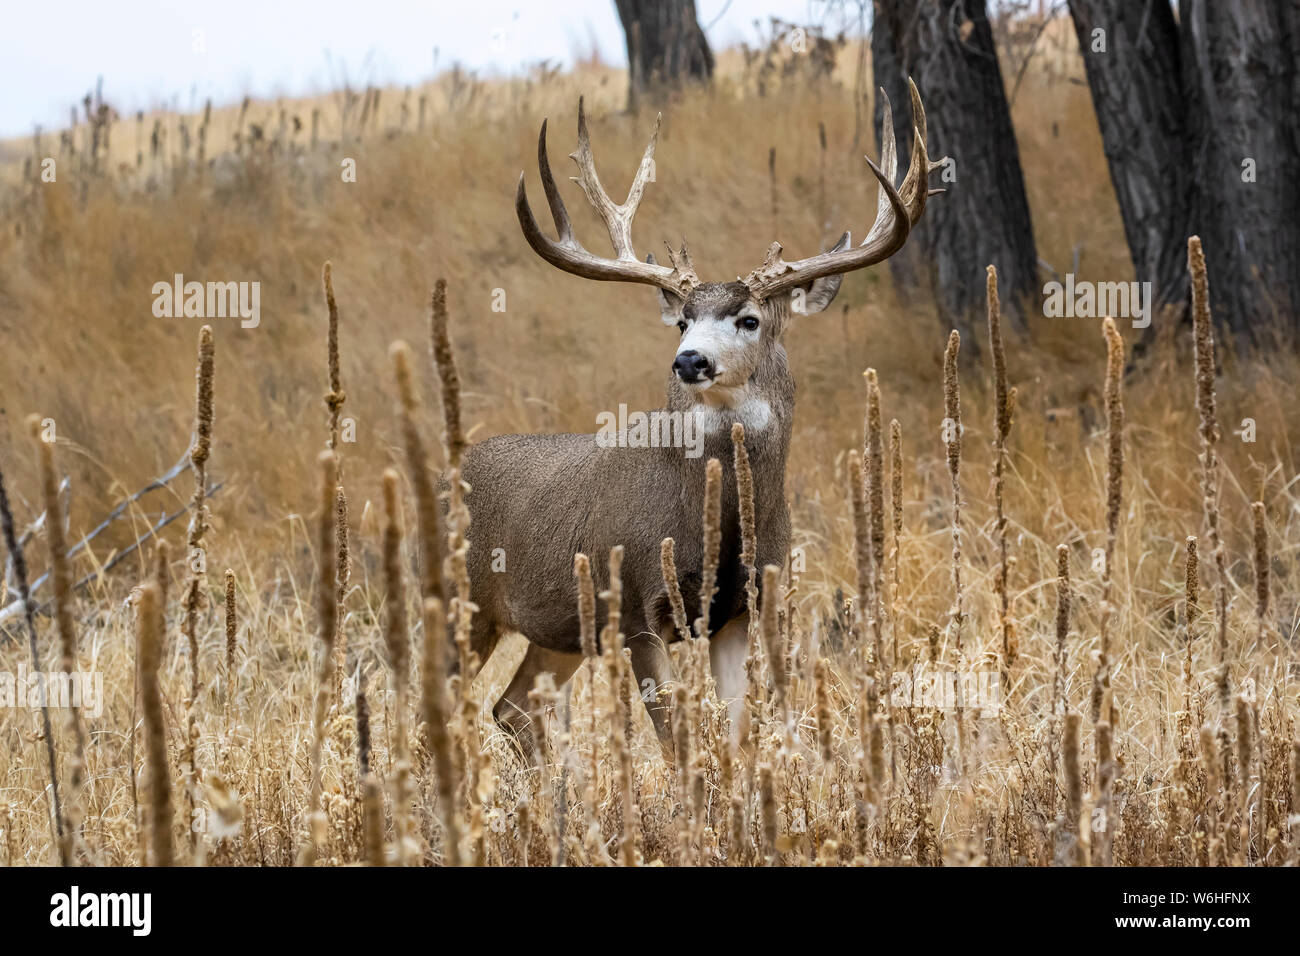 Le cerf mulet (Odocoileus hemionus) mâle debout dans un champ d'herbe ; Denver, Colorado, États-Unis d'Amérique Banque D'Images